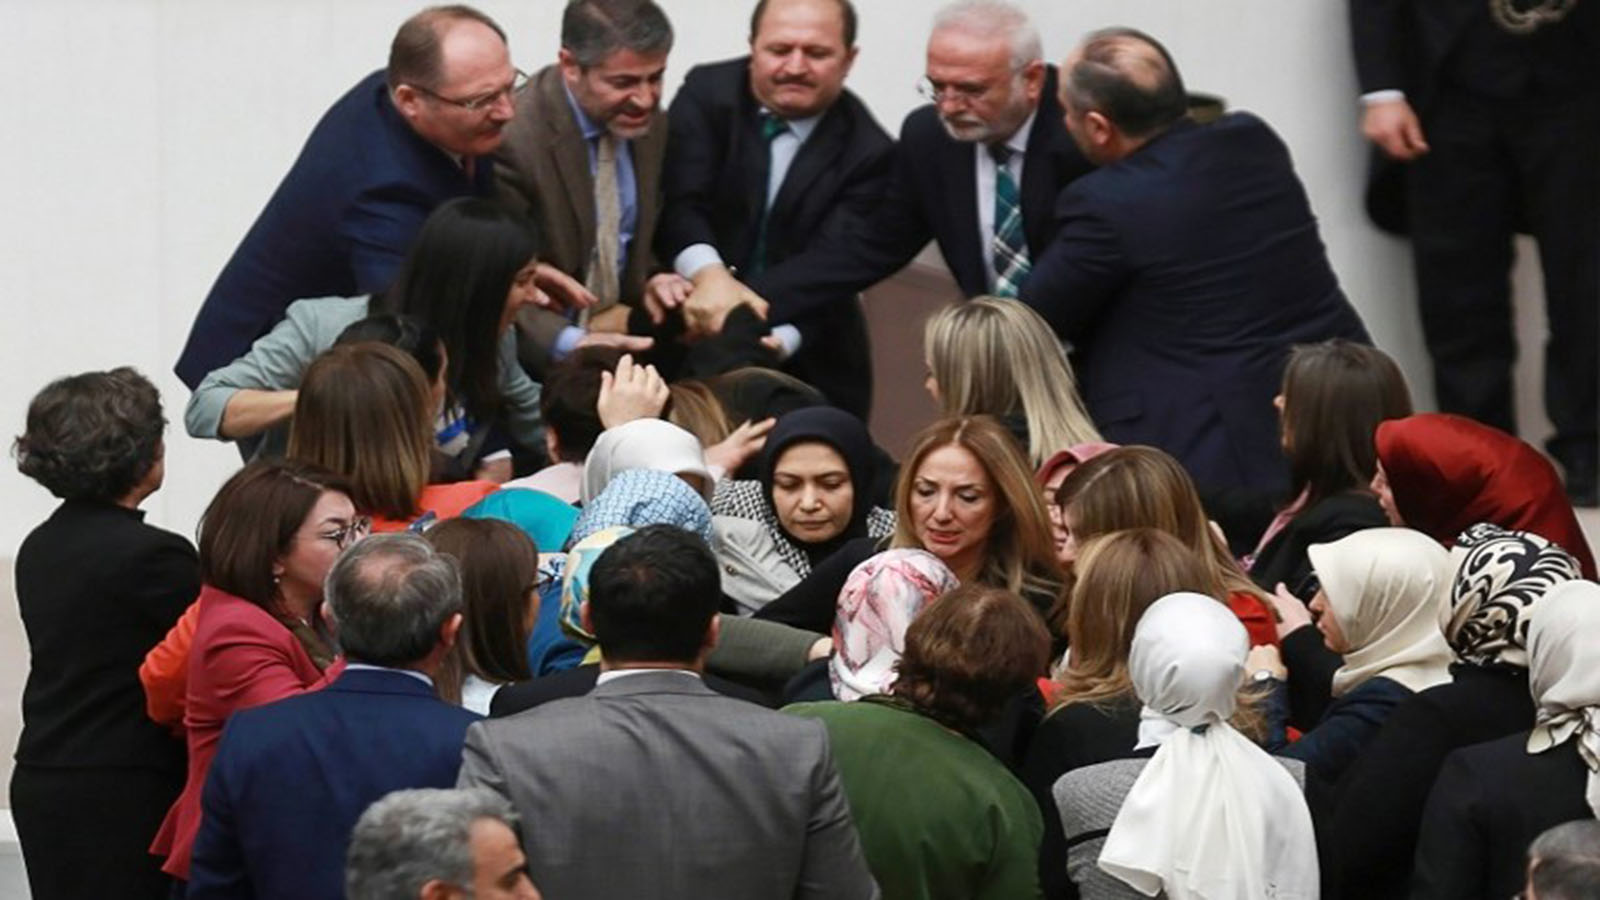 عنف في البرلمان التركي: بين السلطوية والاستبعاد